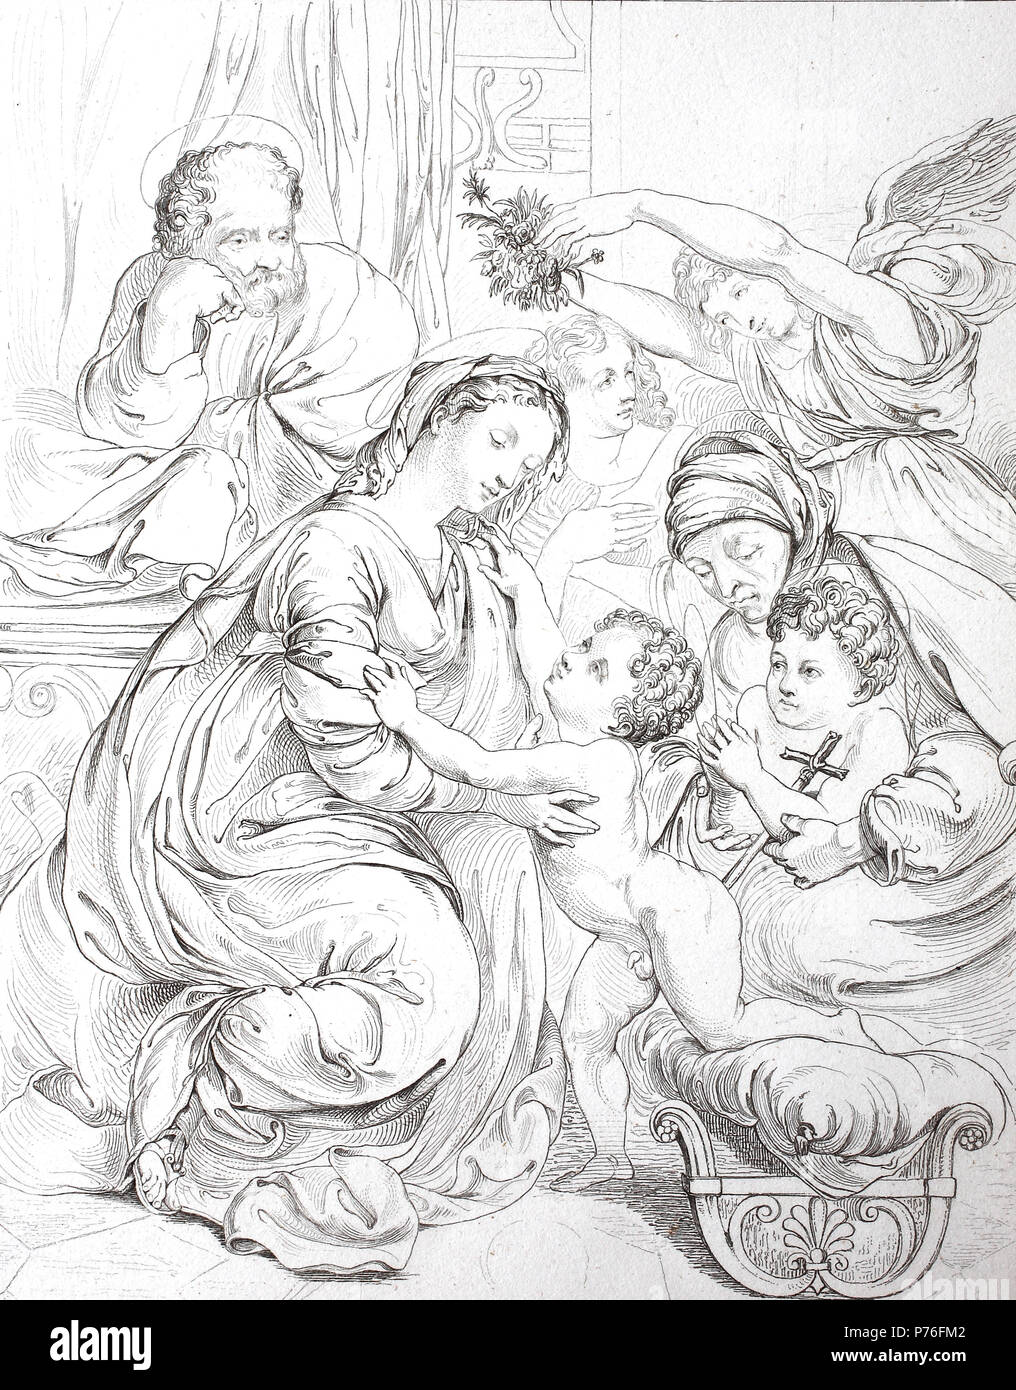 La sainte famille de Jésus Christ, par Rafael, numérique l'amélioration de la reproduction de l'original d'imprimer à partir de l'année 1881 Banque D'Images